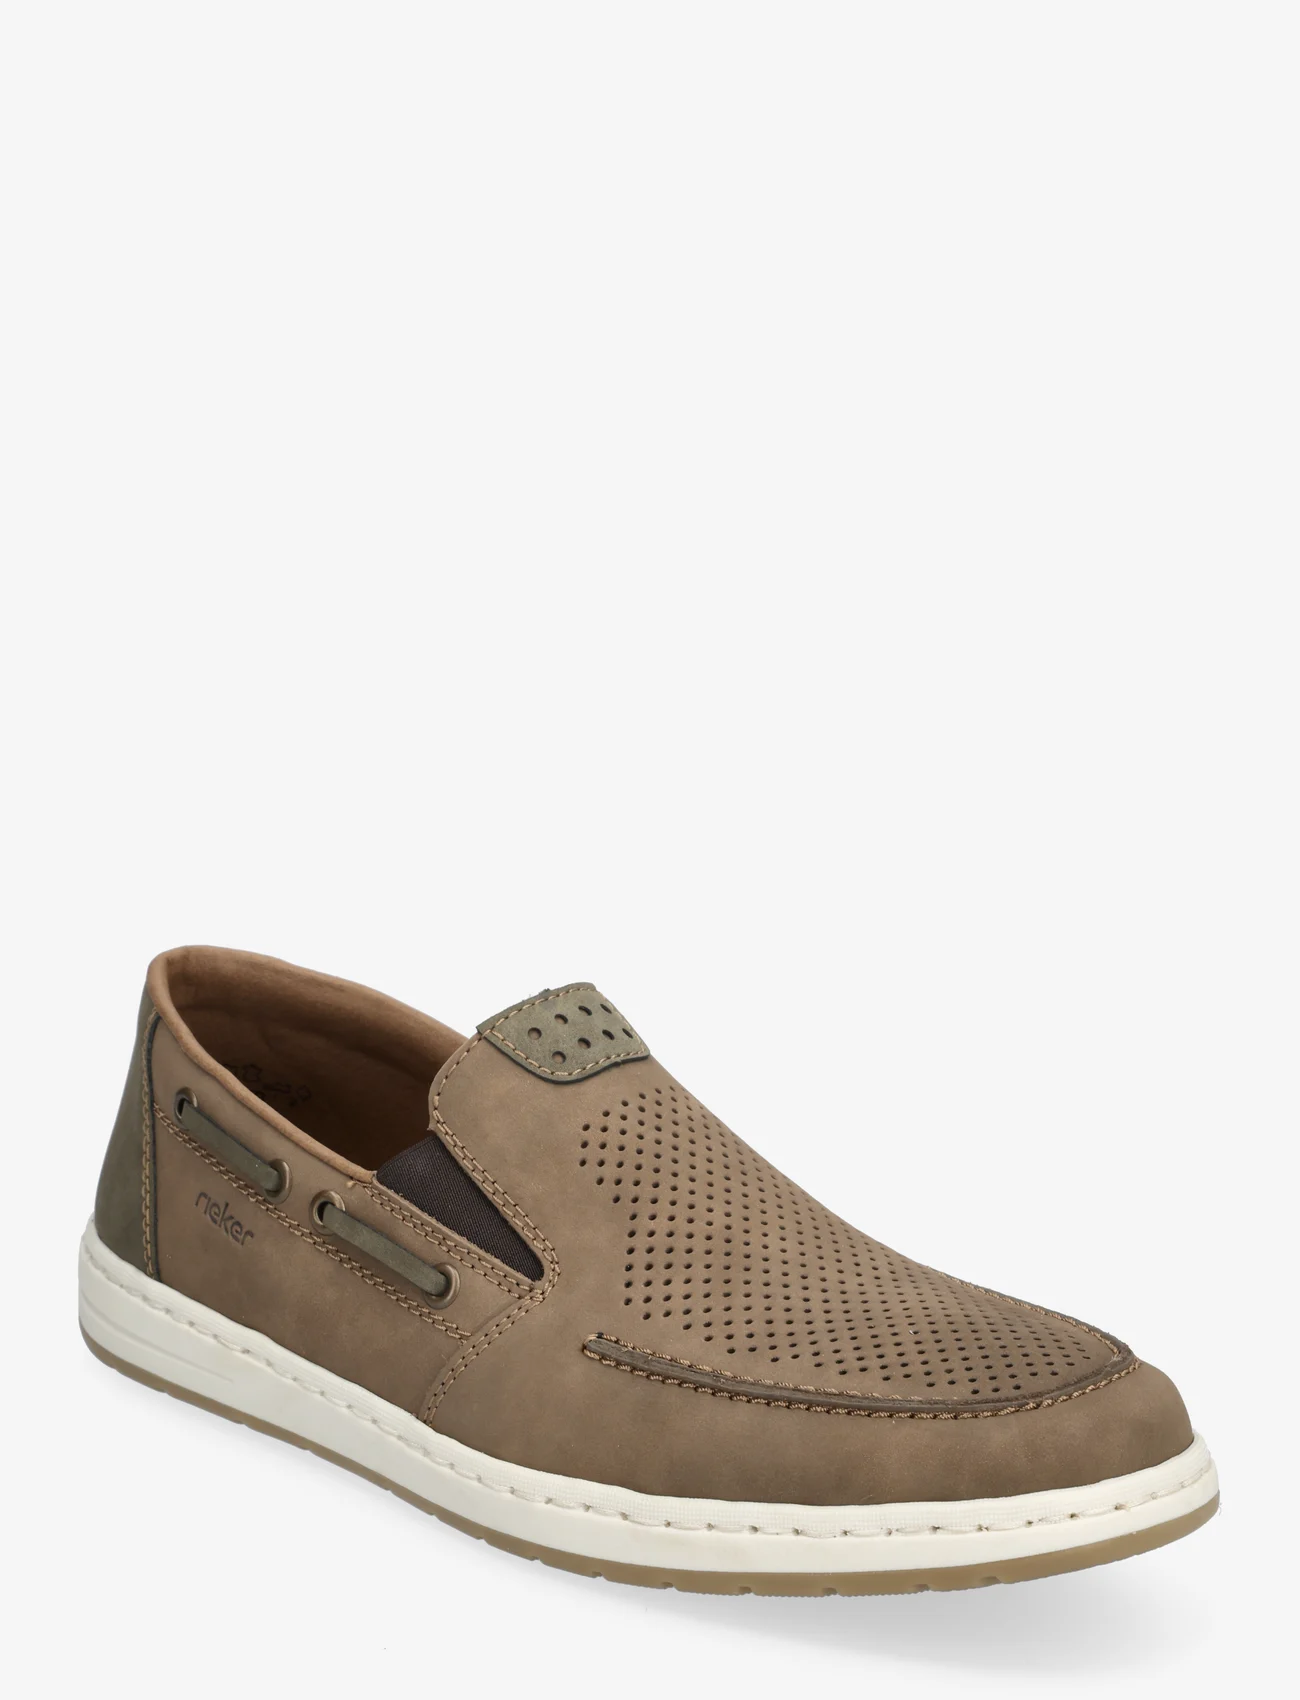 Rieker - 18266-26 - slip on sneakers - brown - 0